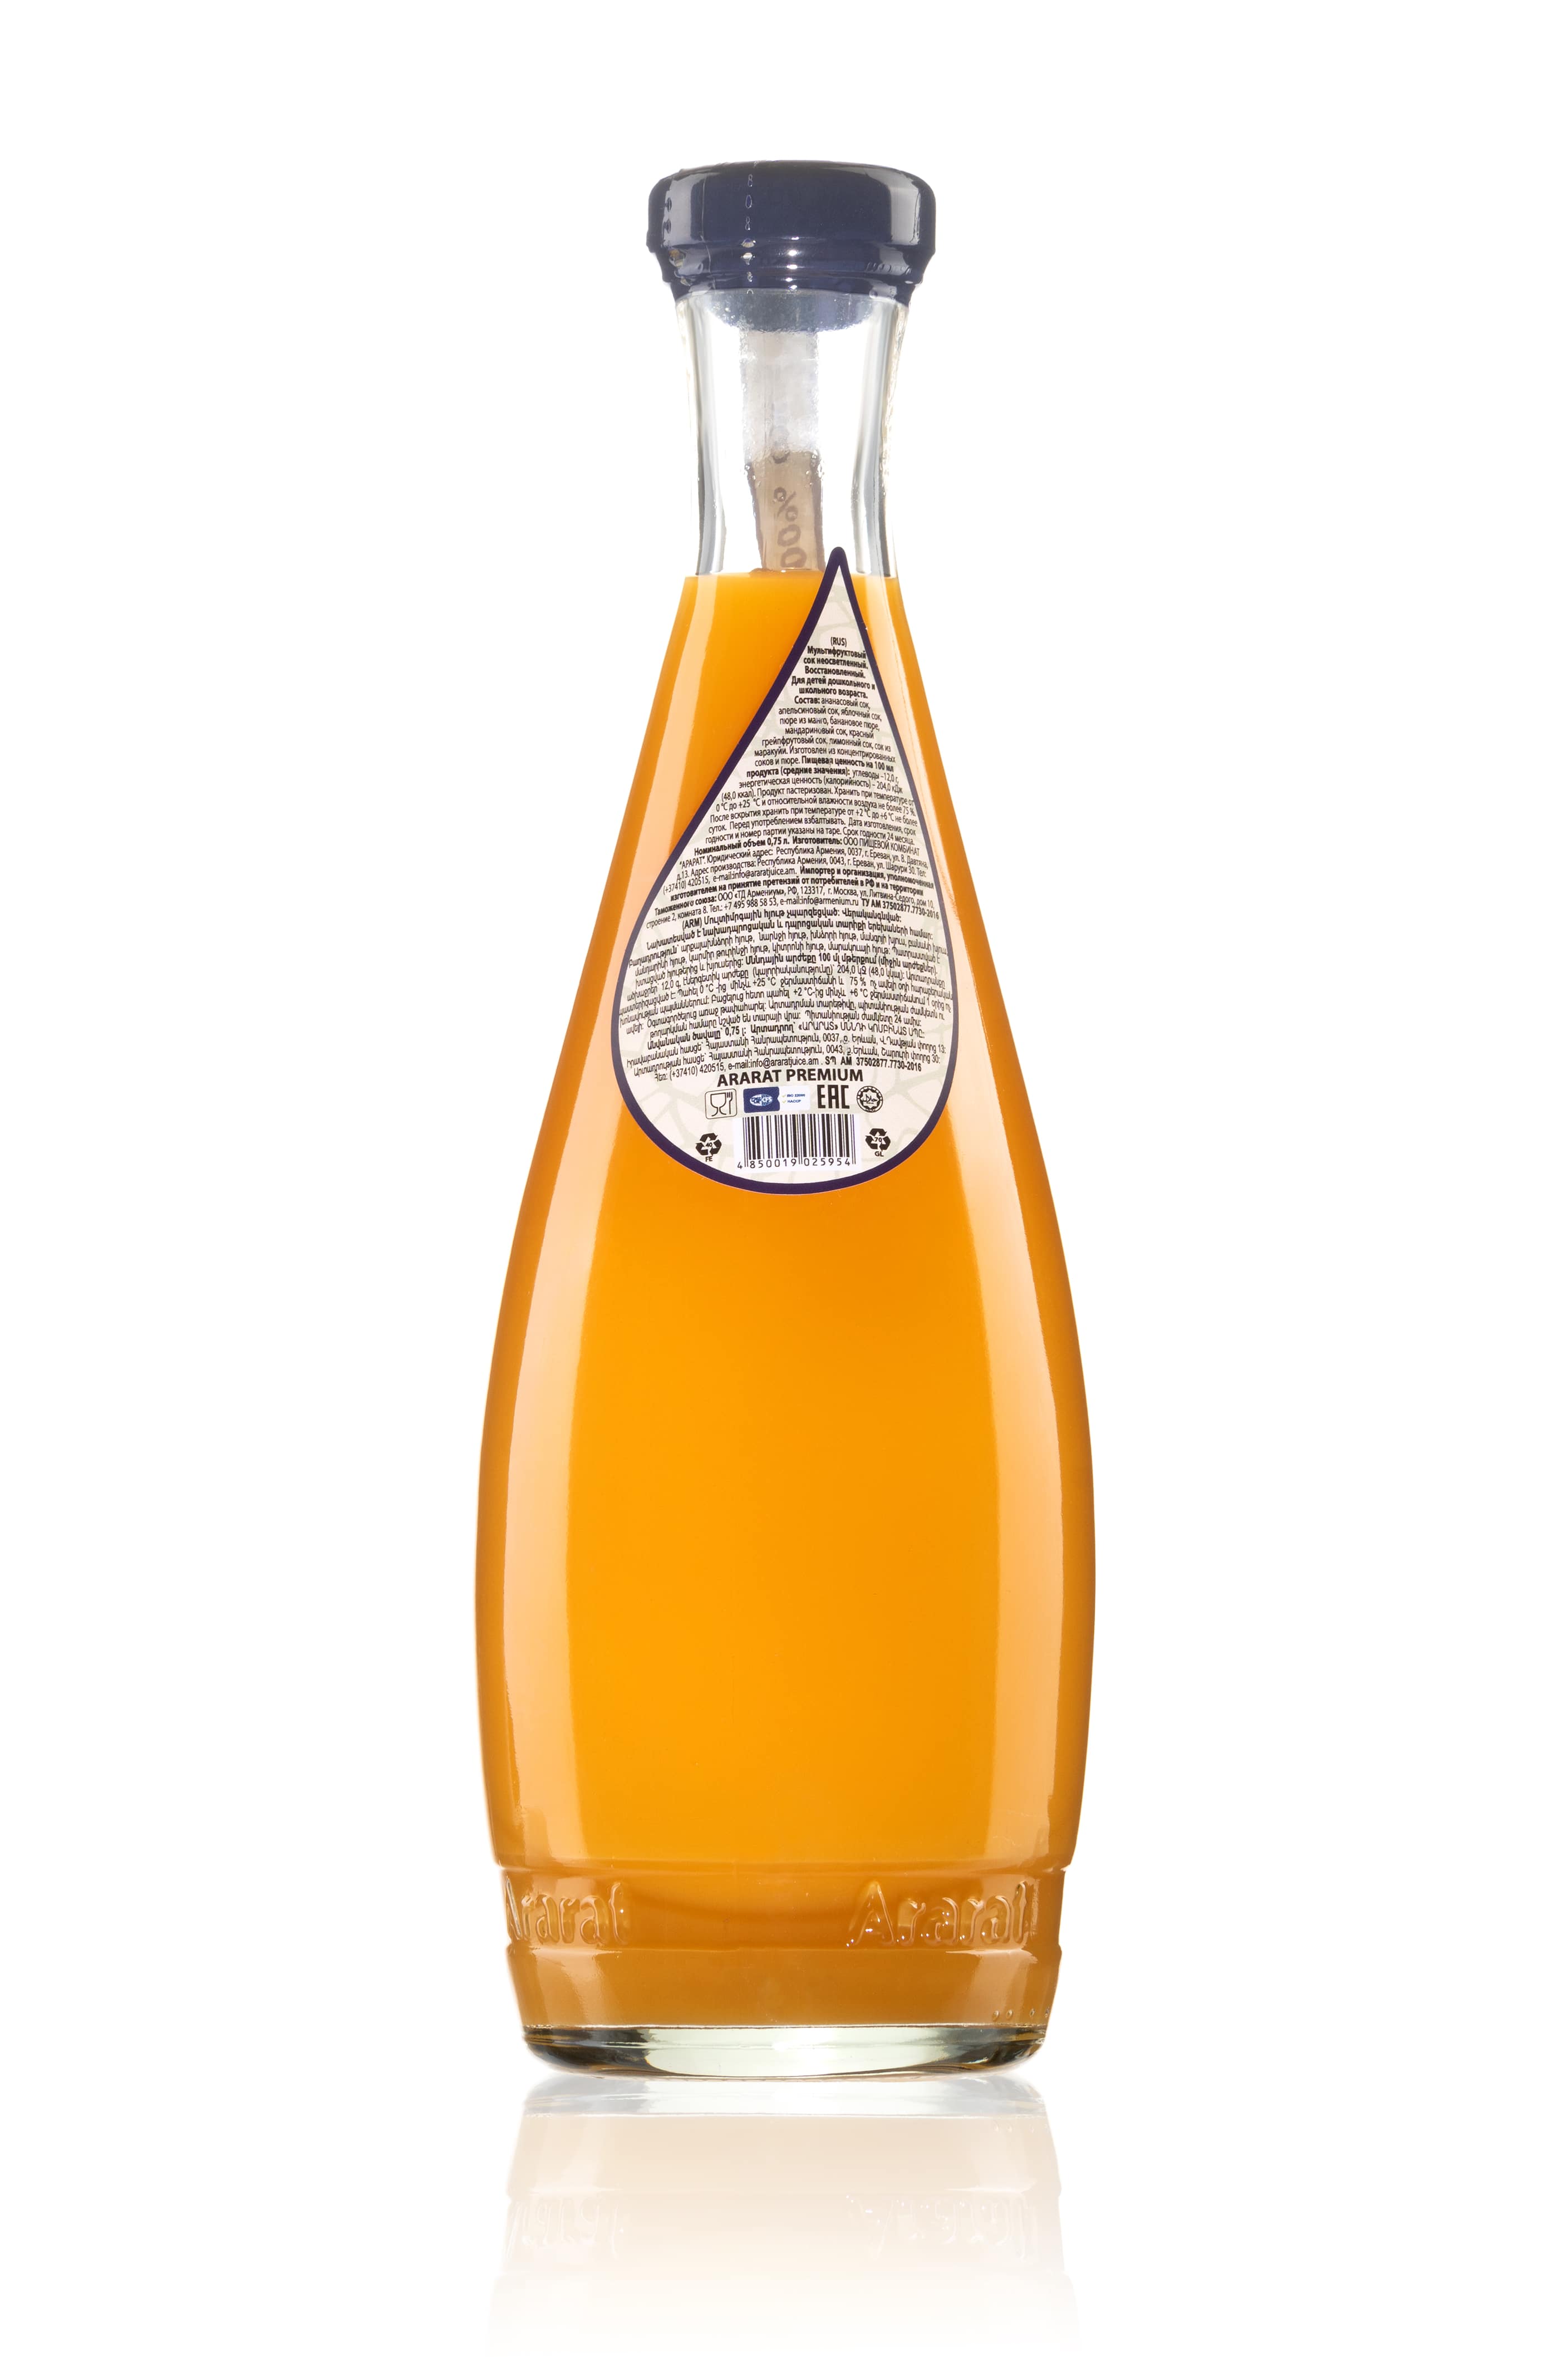 картинка Мультифруктовый сок "Ararat Premium" 0,75л. ст. от магазина Армениум